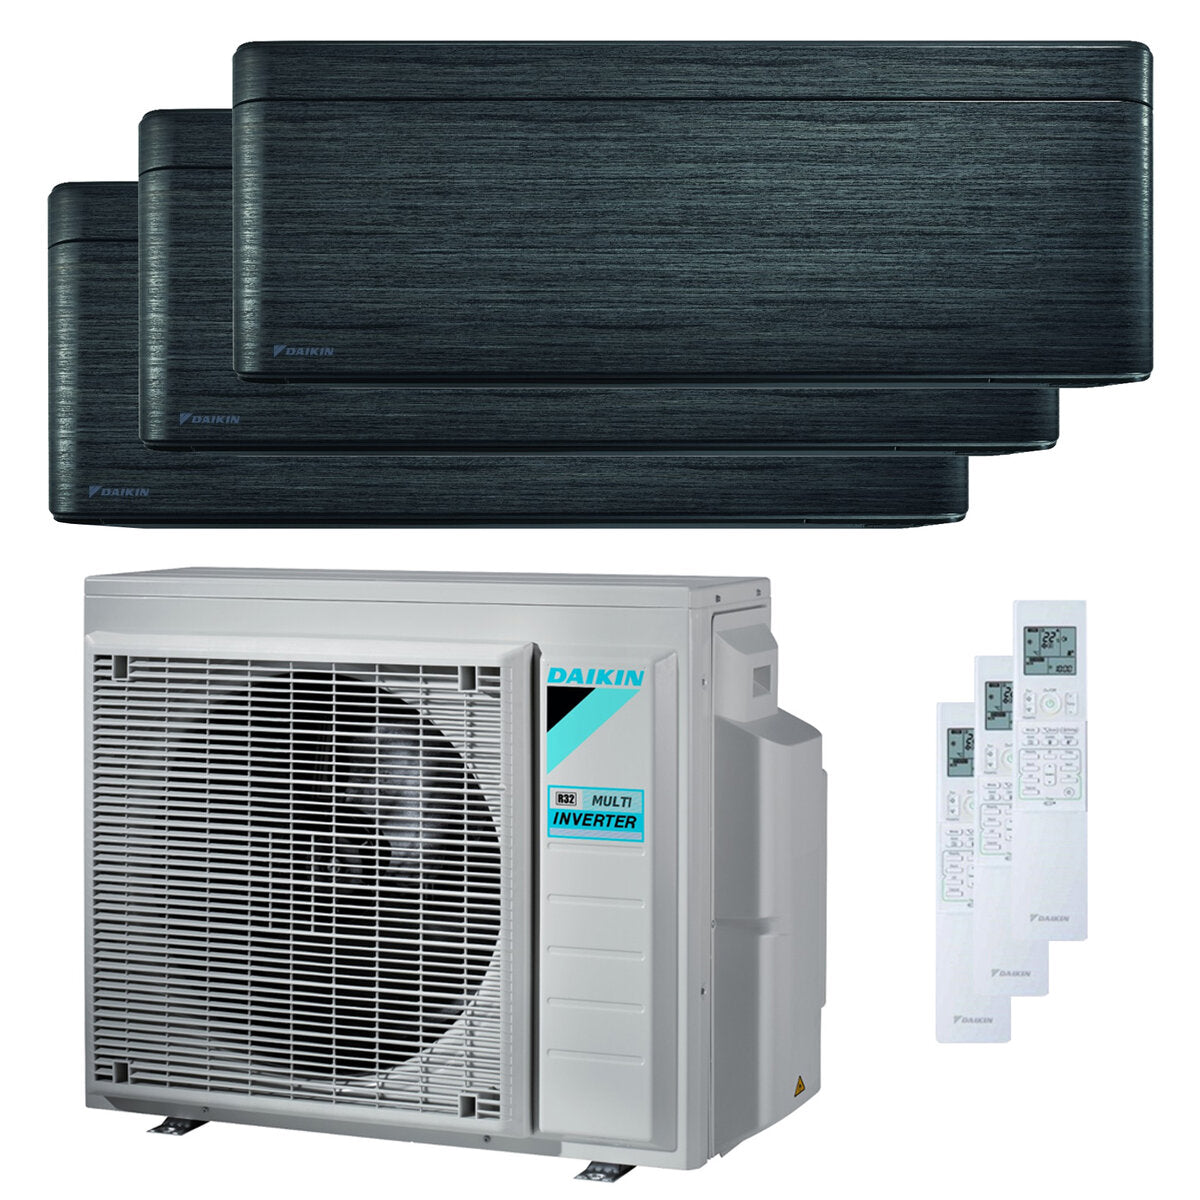 Daikin Stylish Trial Split Klimaanlage 9000 + 12000 + 18000 BTU Inverter A++ WLAN Außengerät 6,8 kW